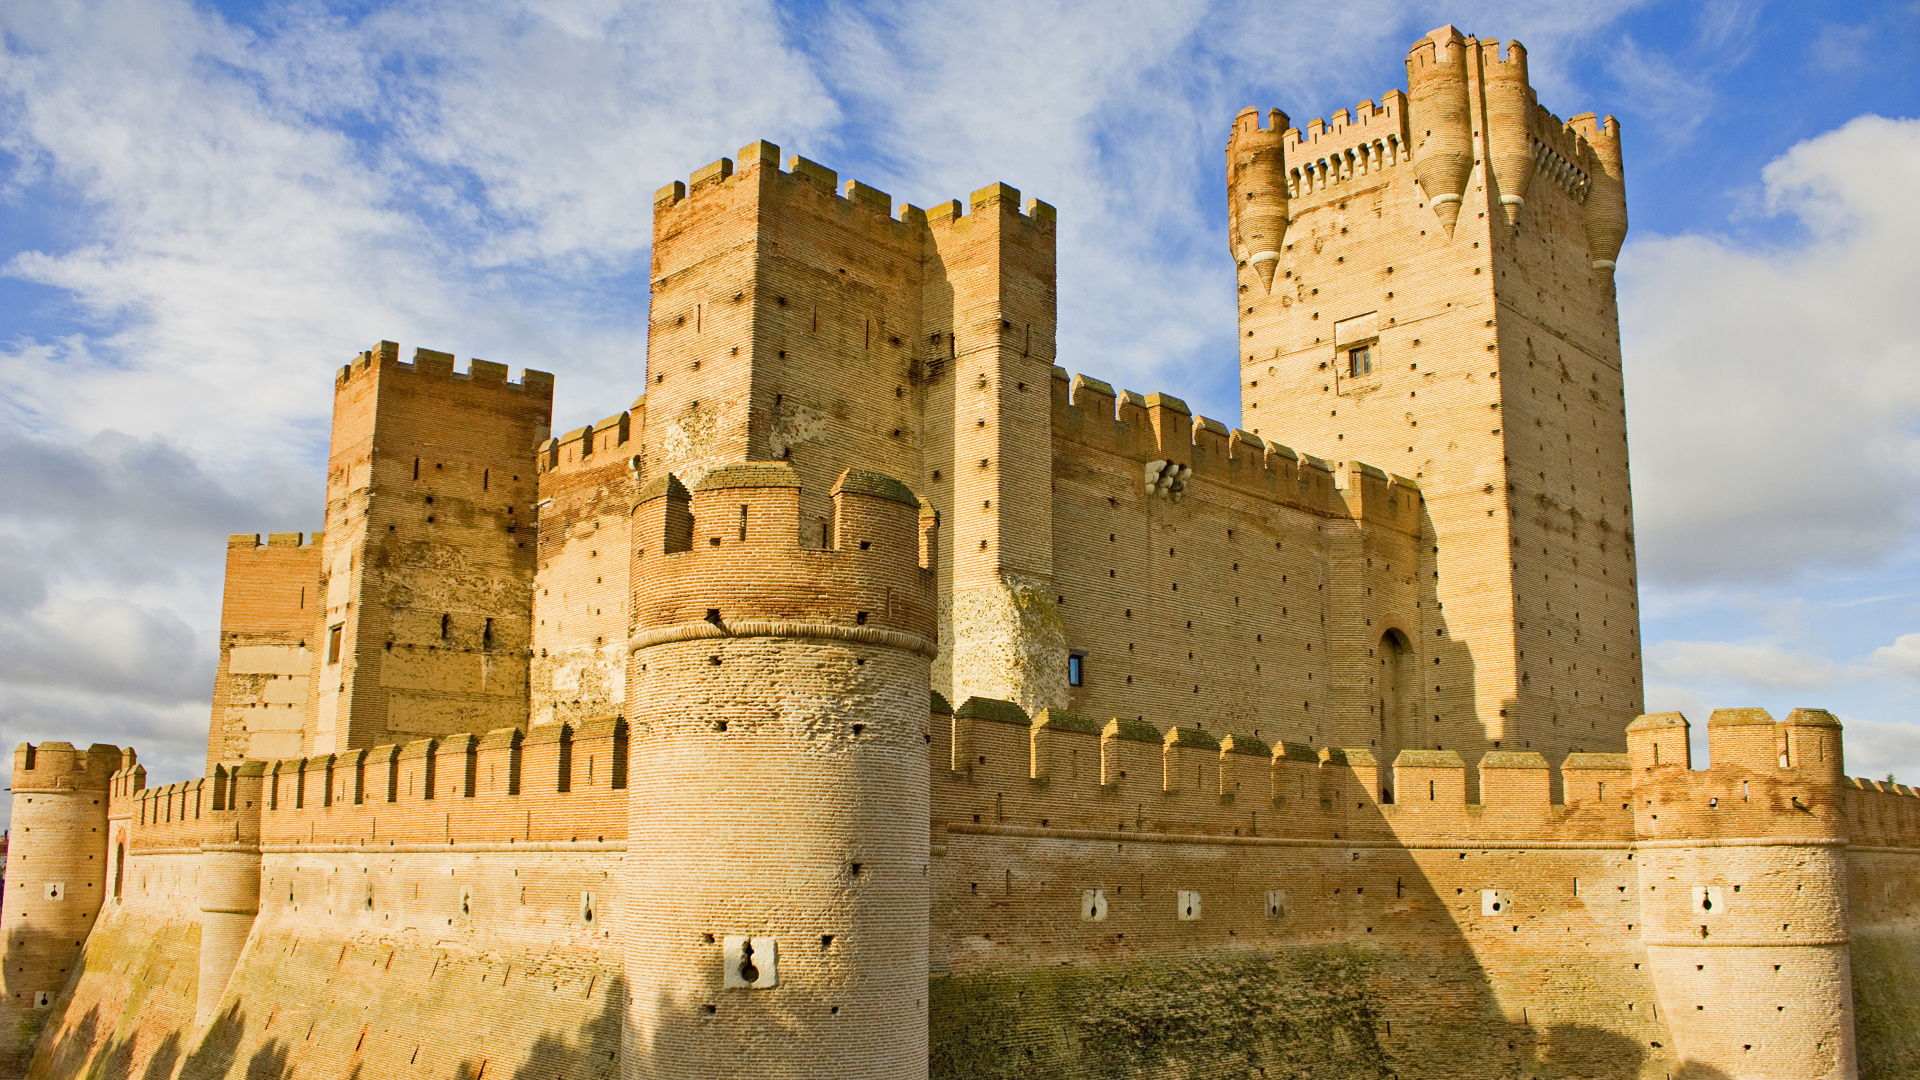 城堡, 防御工事, 历史站, 里程碑, 中世纪建筑风格 壁纸 1920x1080 允许